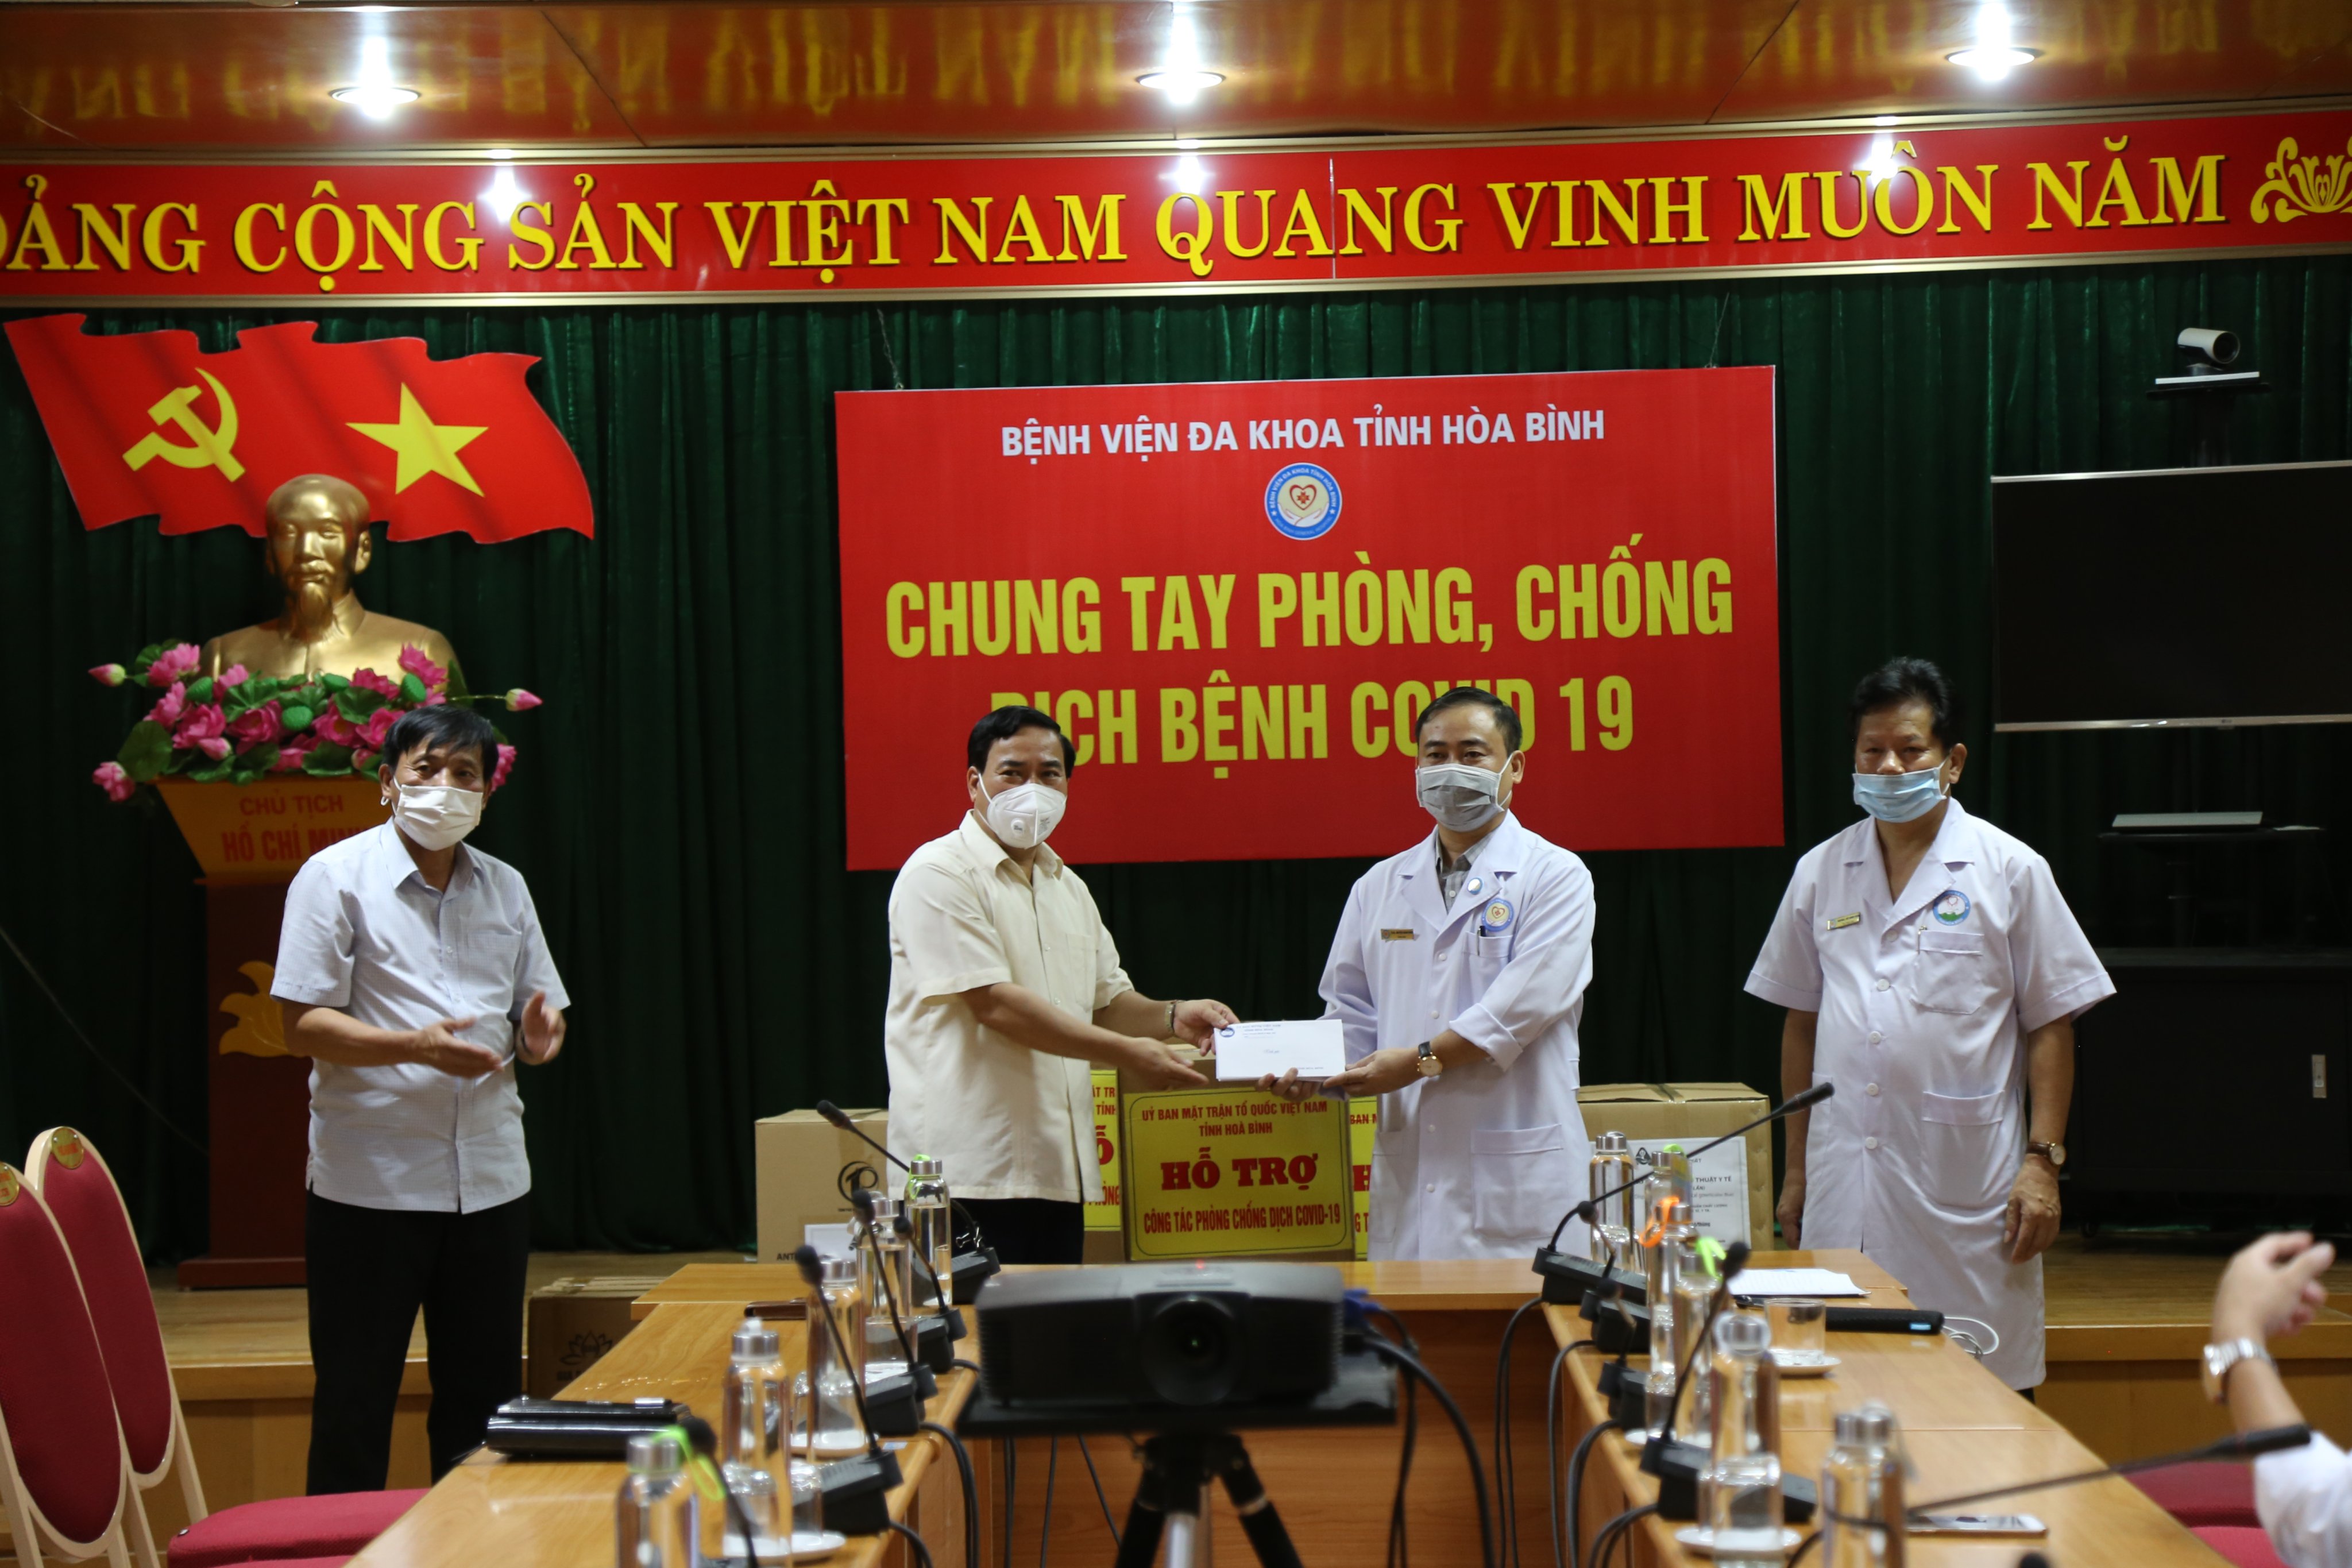  Mặt trận tổ quốc Việt Nam tỉnh và các cơ quan, doanh nghiệp, cá nhân ủng hộ Bệnh viện Đa khoa tỉnh phòng chống dịch